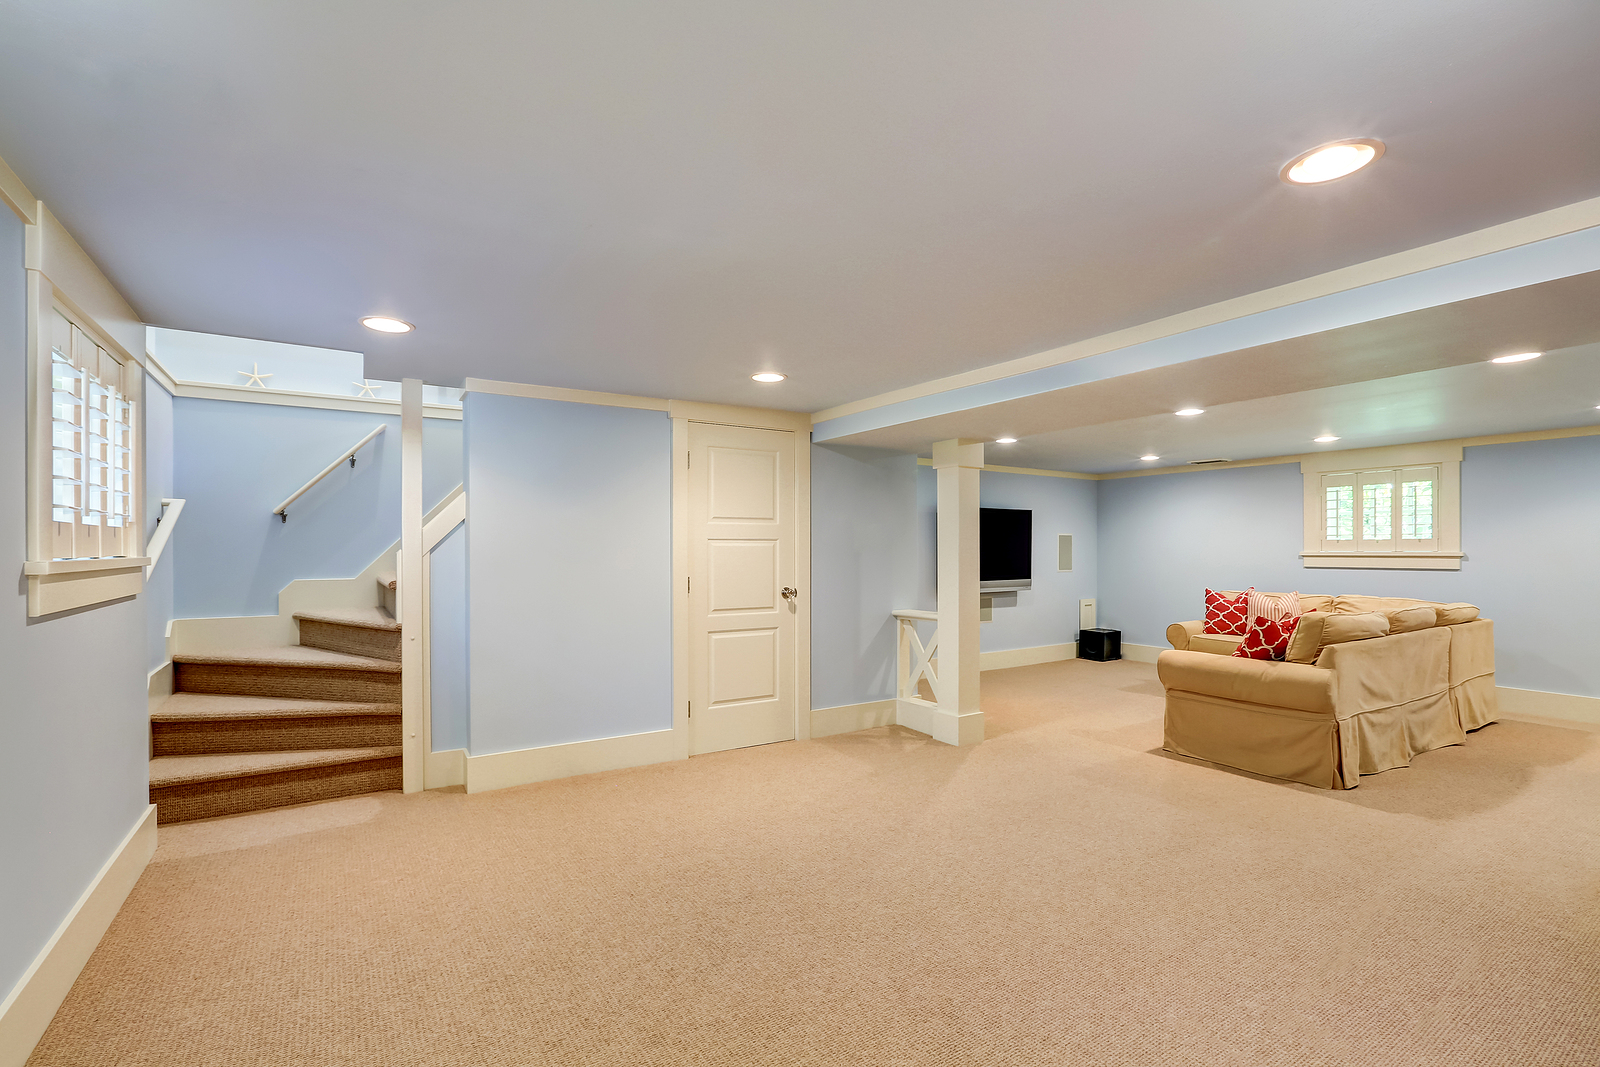 Spacious Basement Room Interior In Pastel Blue Tones